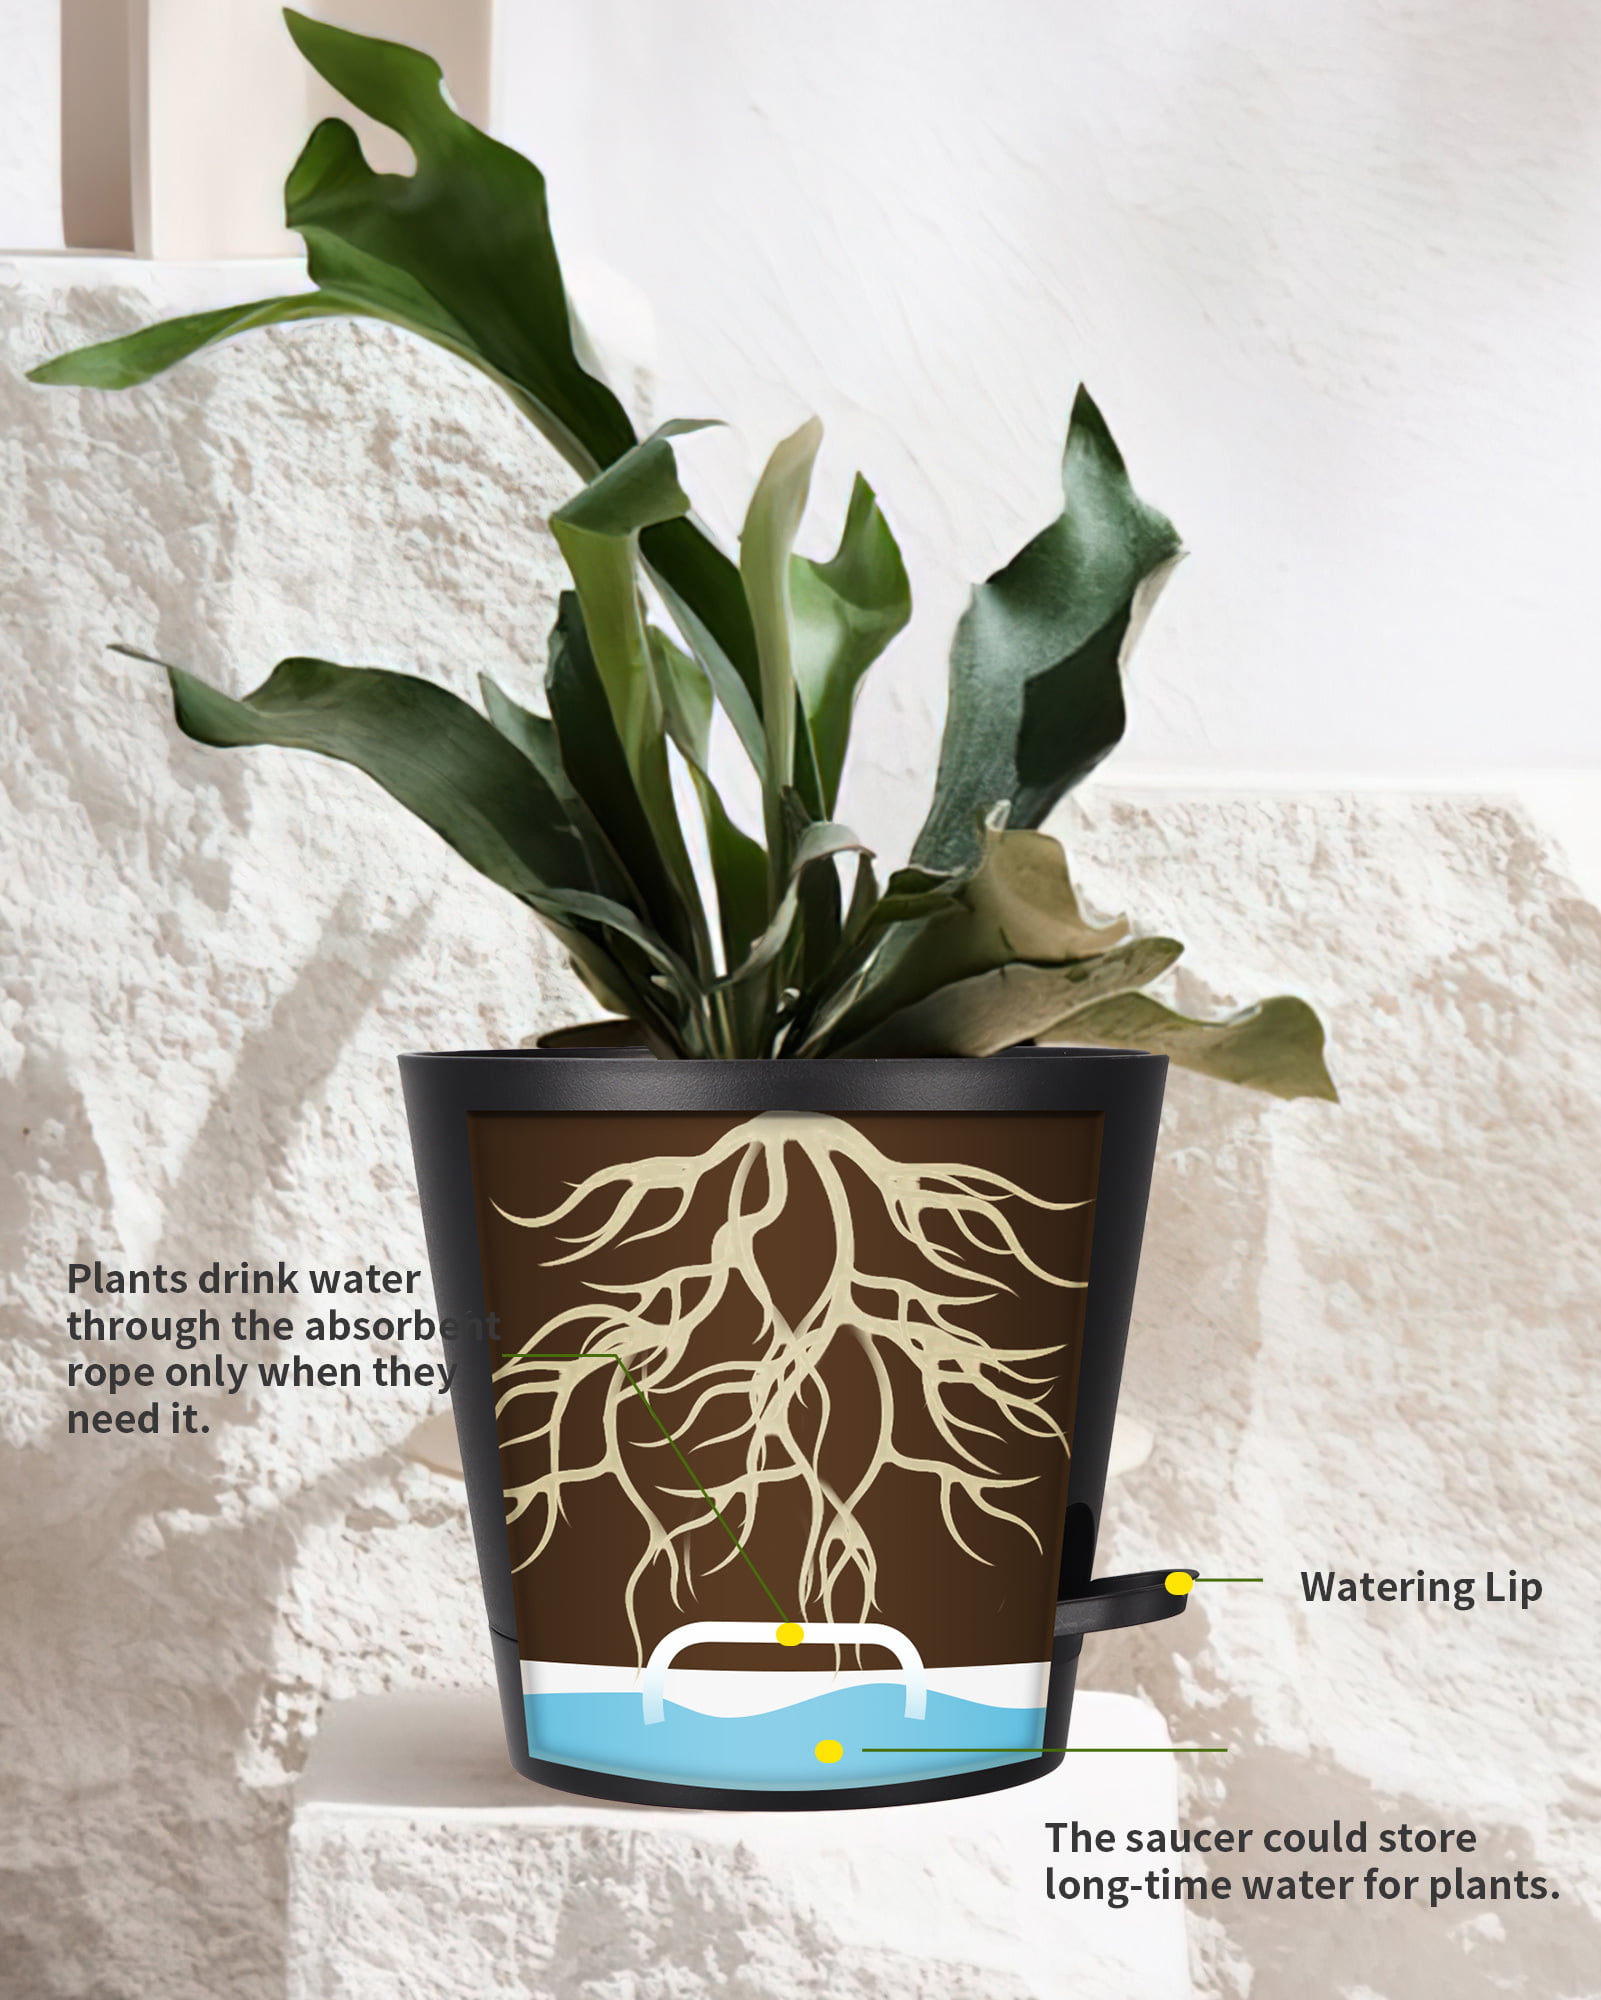 公式オンラインストア Sin wings Black Flower Pots，6 Inch Ceramic Plant Pots for Plants  鉢、プランター MAILGERIMOB